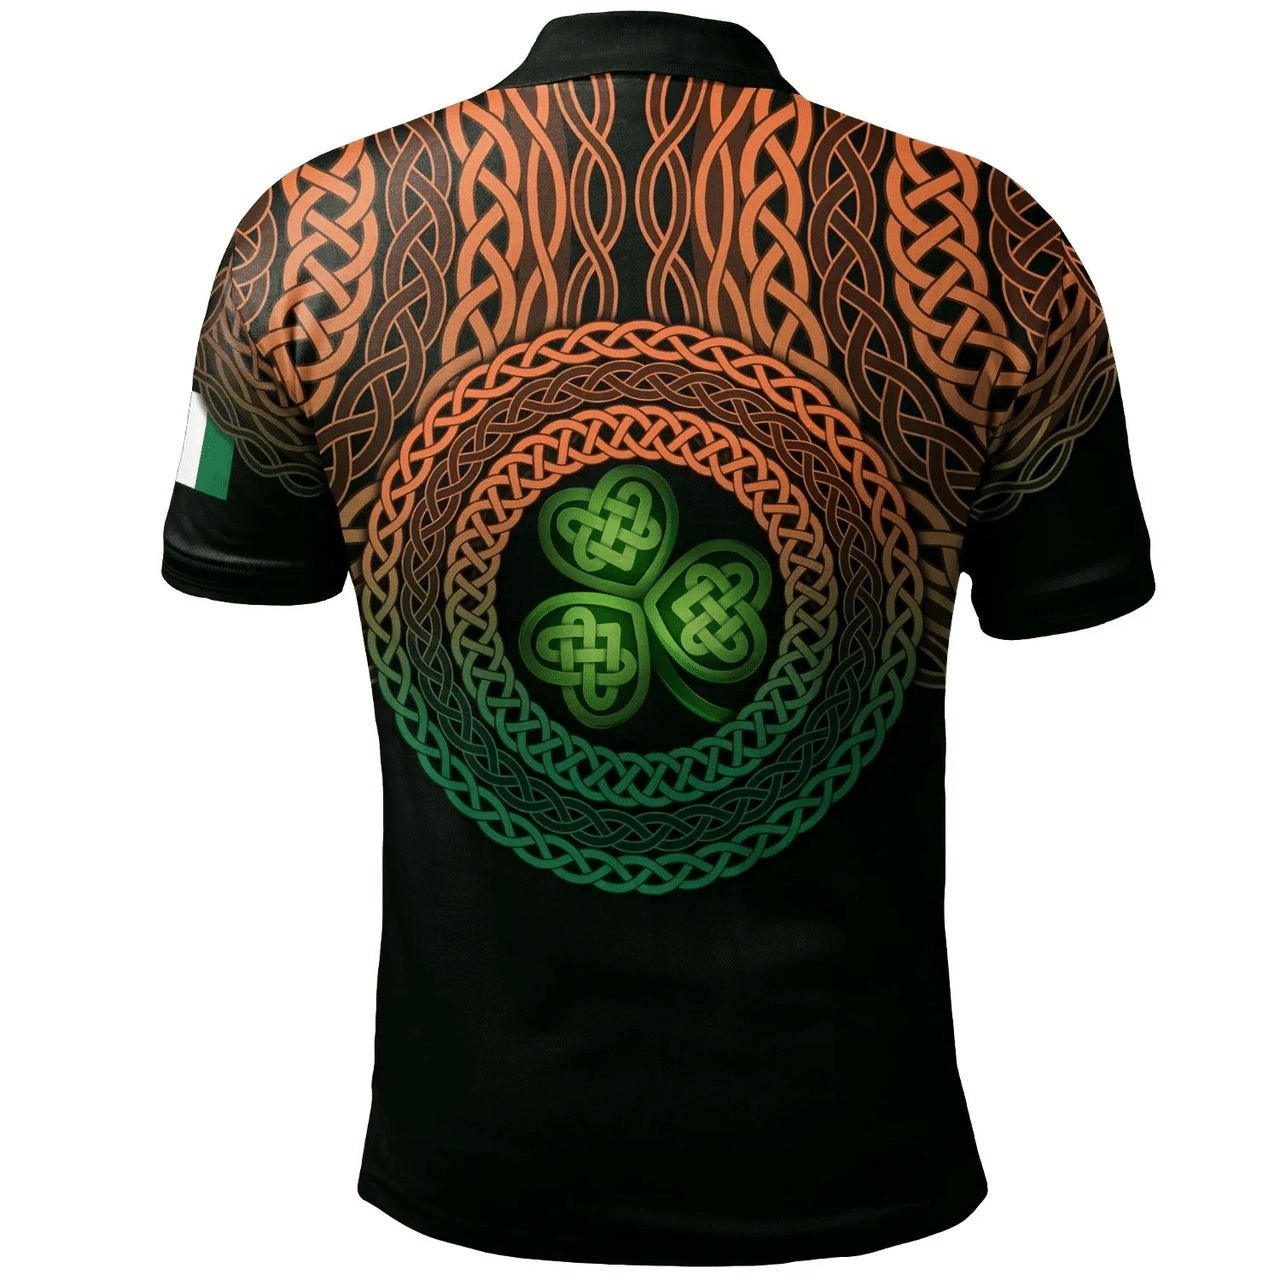 1stIreland Ireland Polo Shirt - Vigors Irish Family Crest Polo Shirt - Celtic Pride A7 | 1stIreland.com